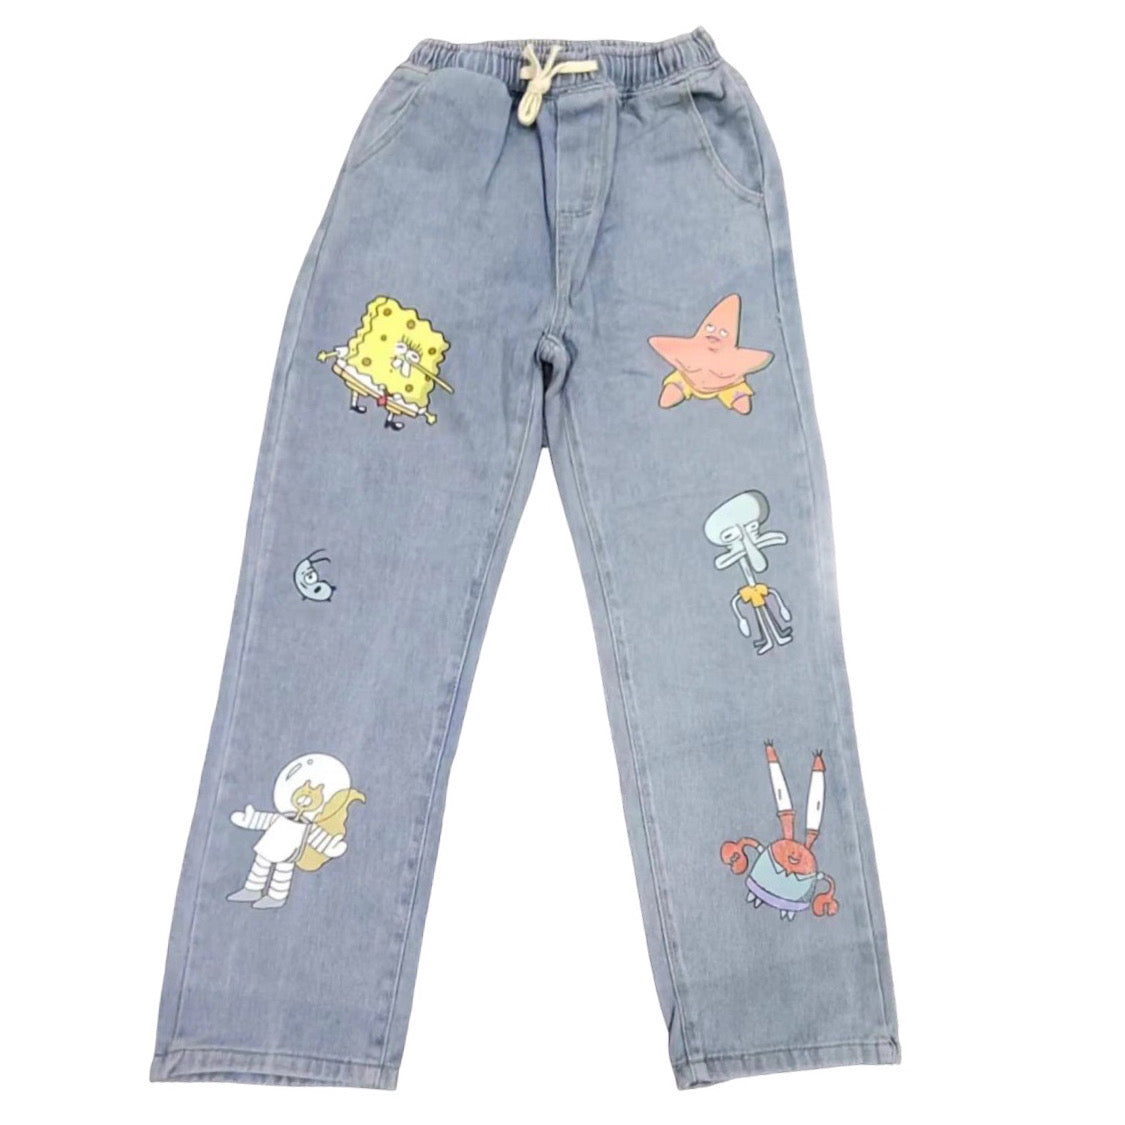 spongebob cargo pants